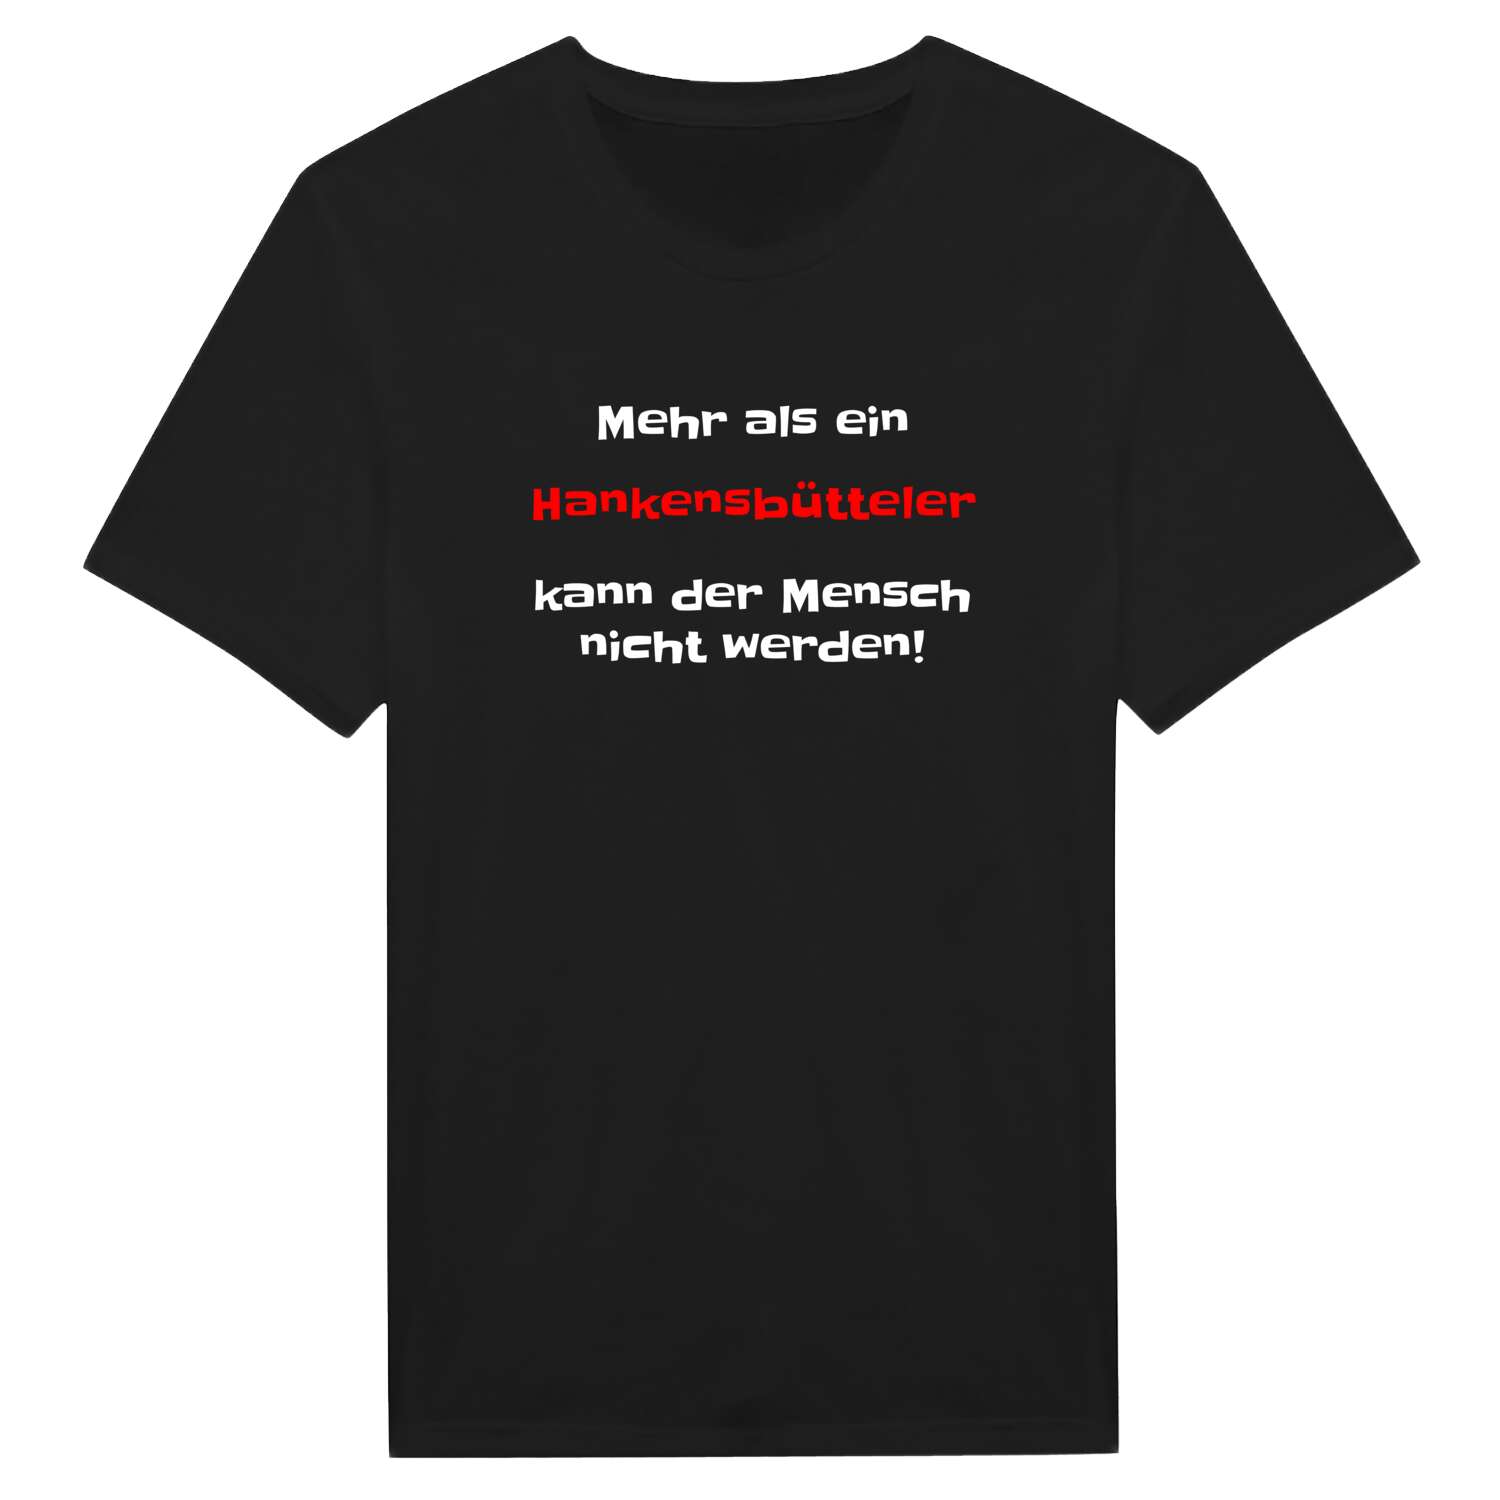 Hankensbüttel T-Shirt »Mehr als ein«